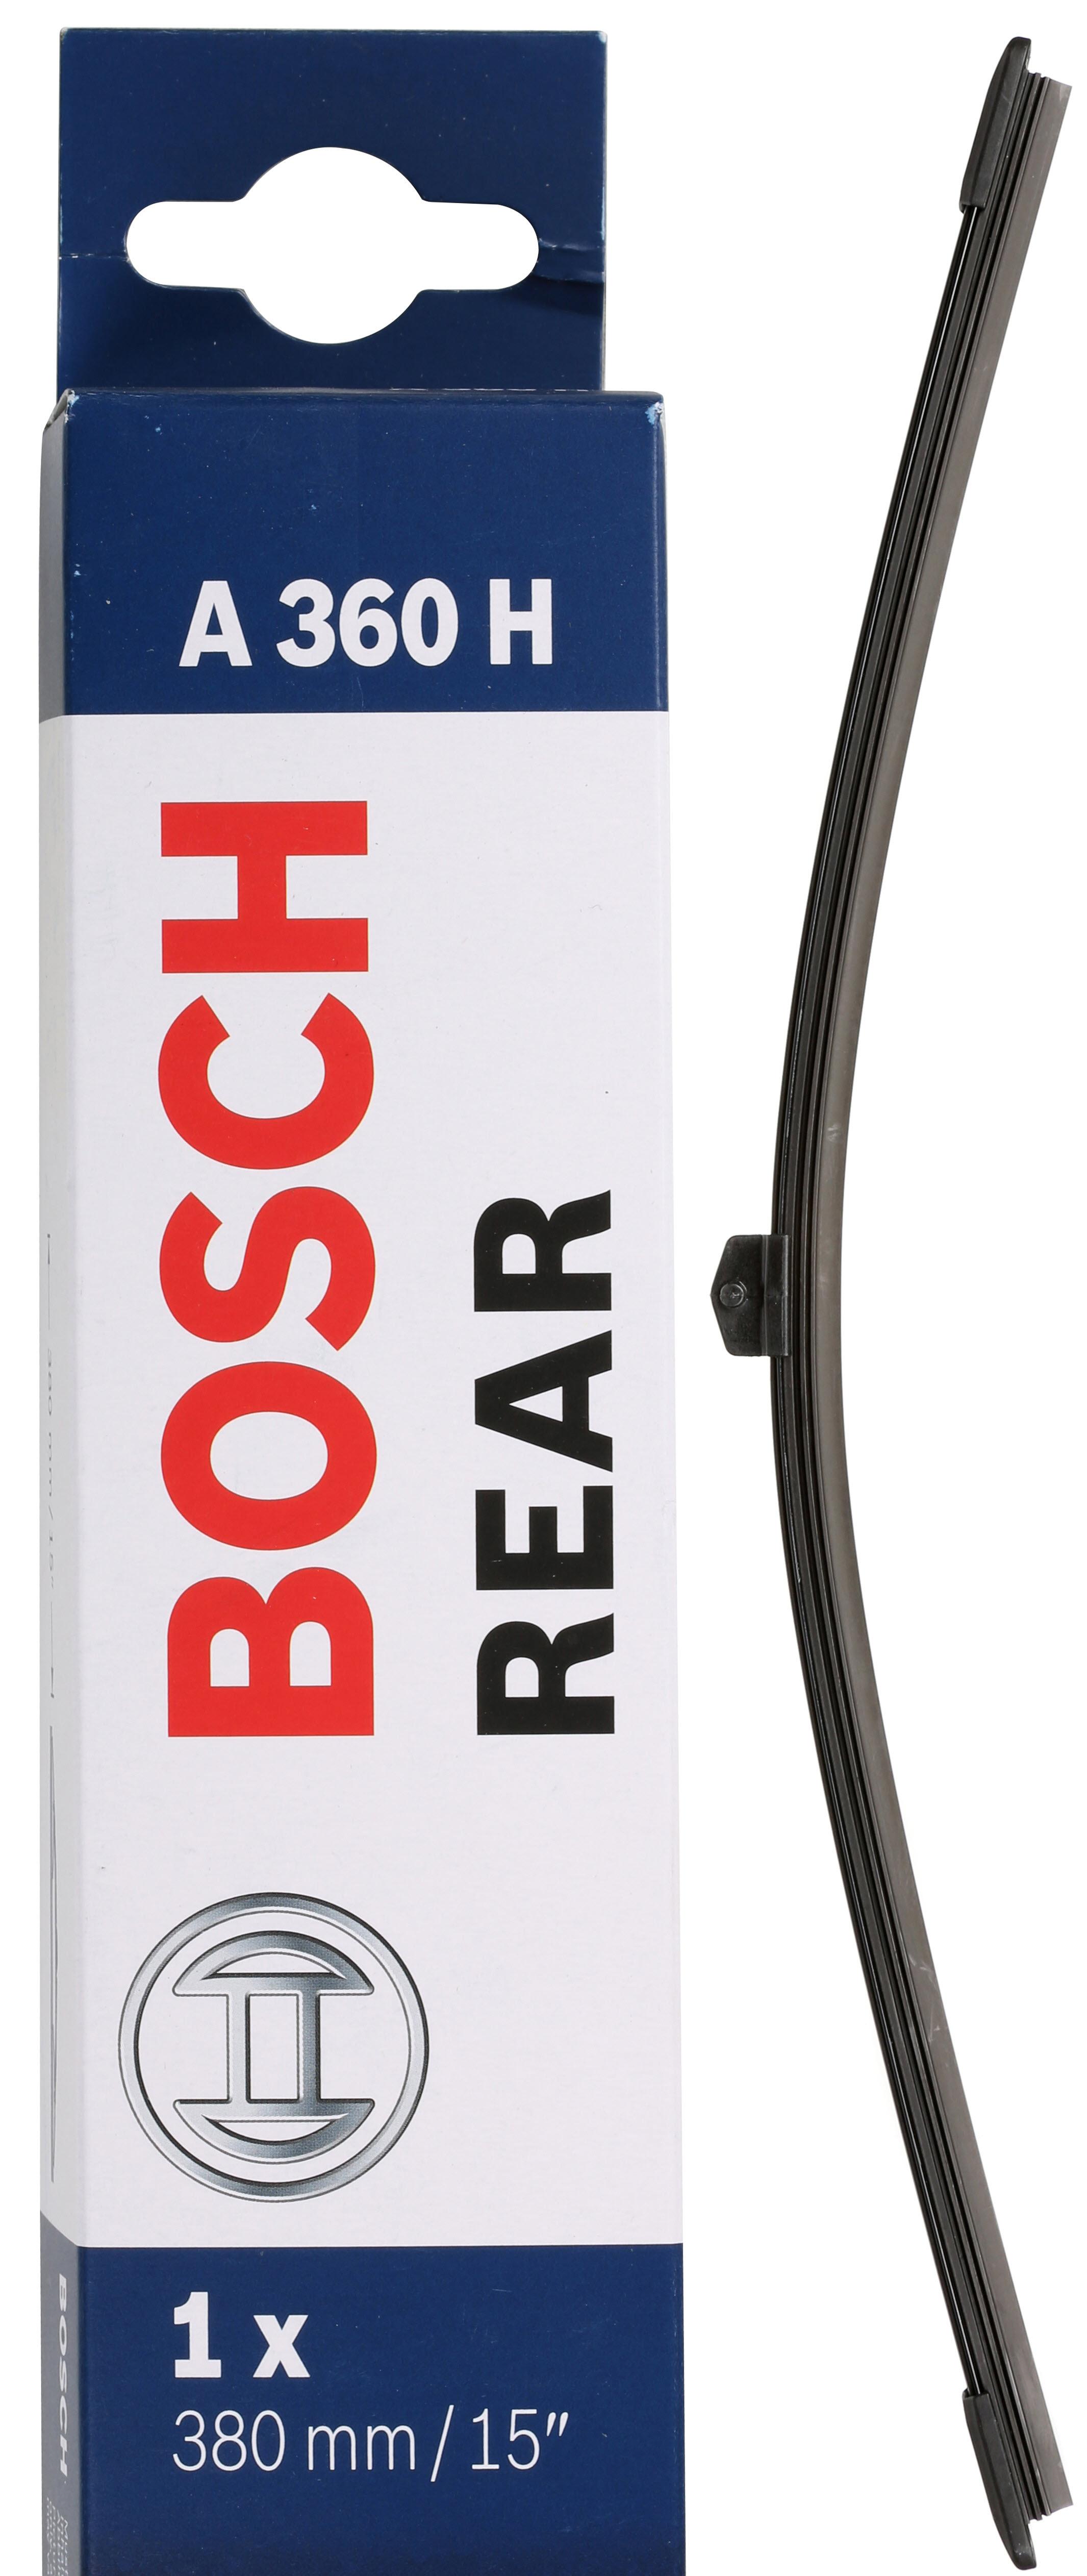 Bosch A360H Wiper Blade - Single